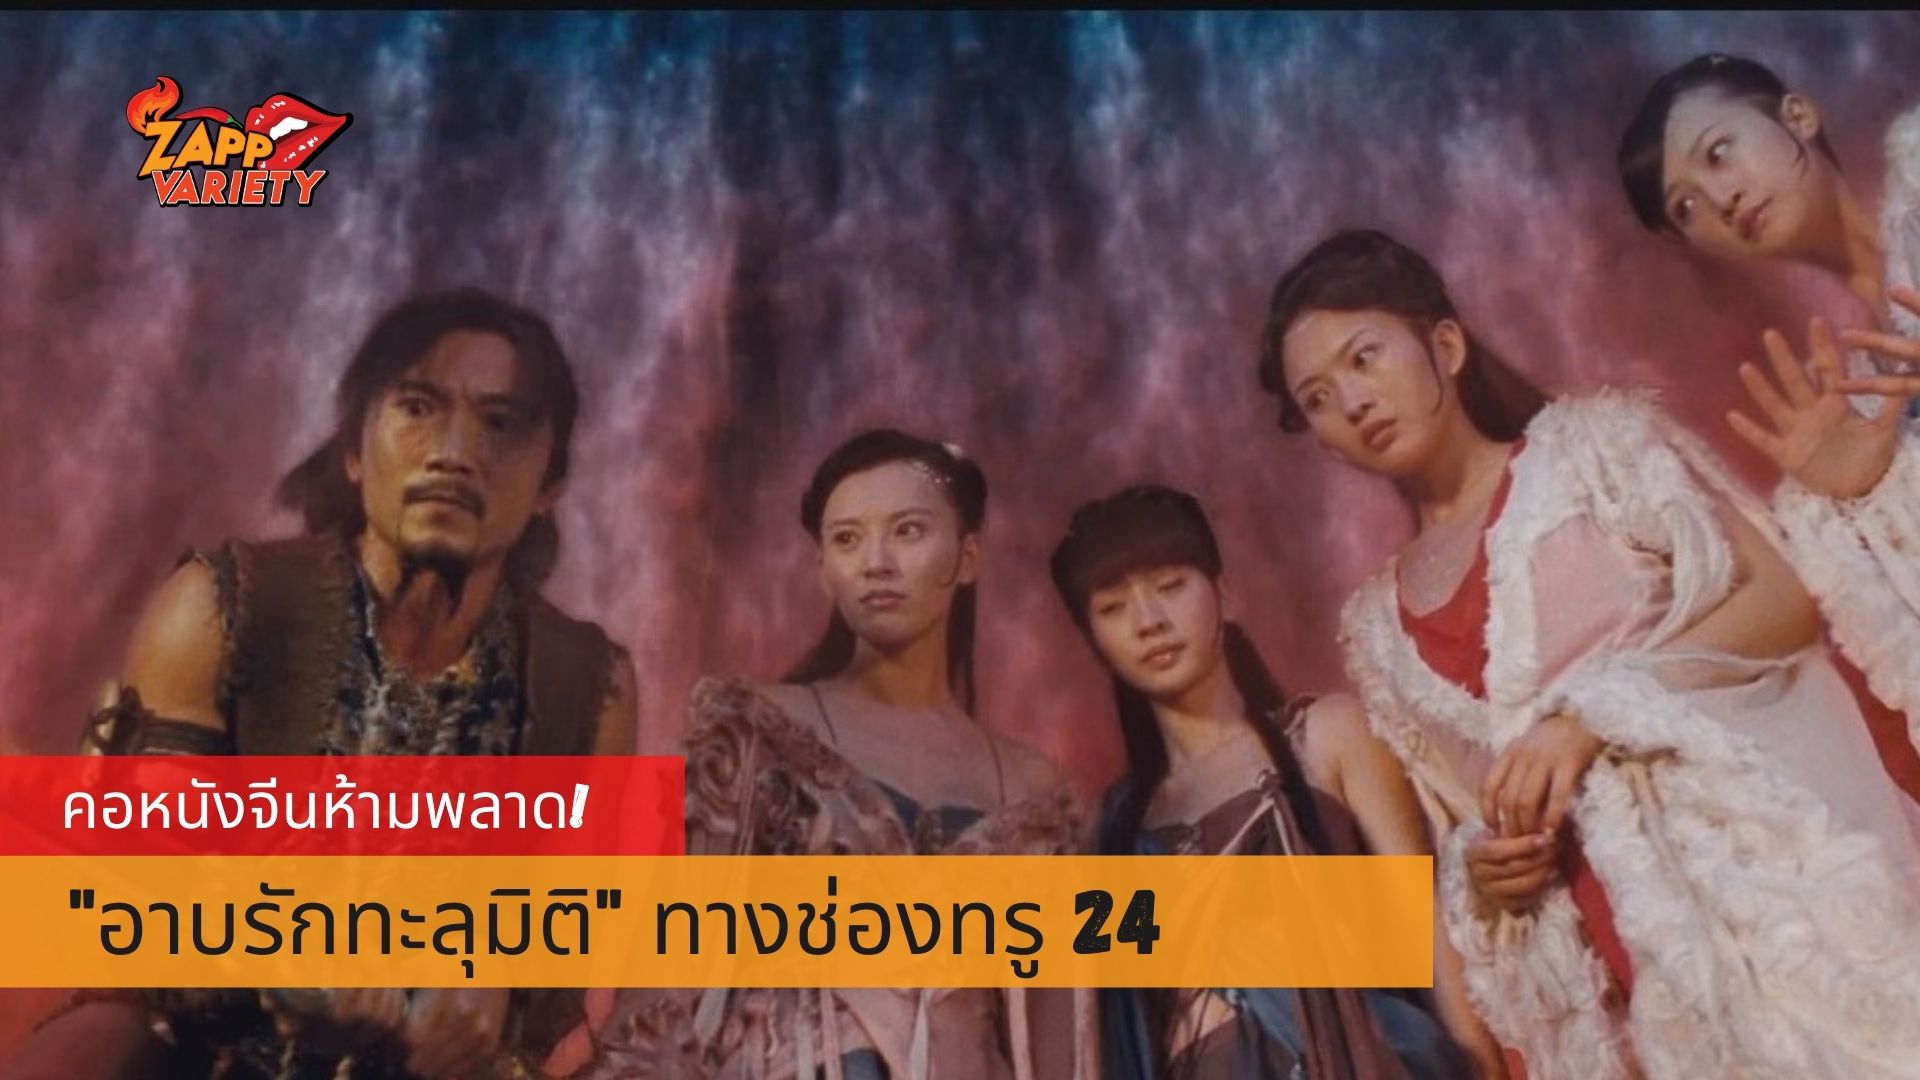 ทรูโฟร์ยู ช่อง 24 เอาใจคอหนังจีน ส่งภาพยนตร์ “อาบรักทะลุมิติ”